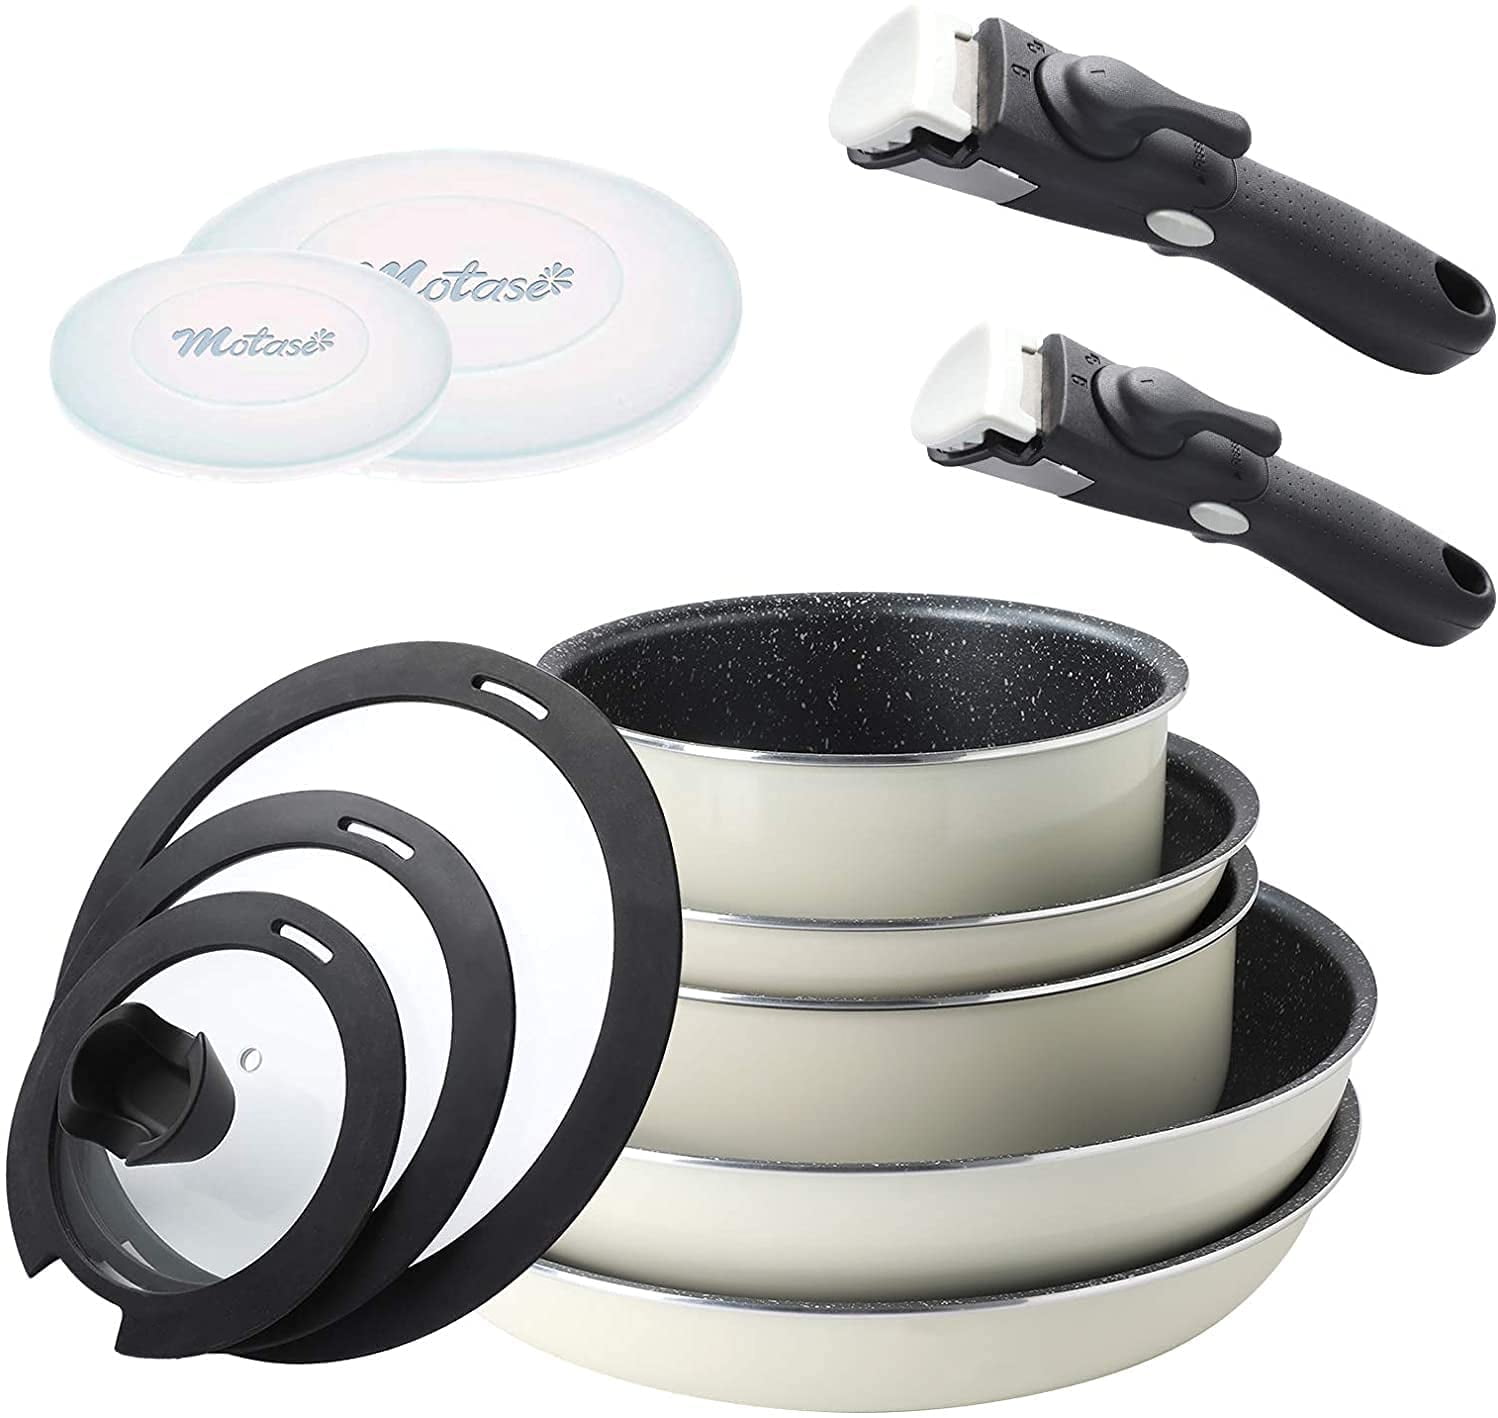 Steel Detachable Handle Pots and Pans - 3 Piece White Ceramic